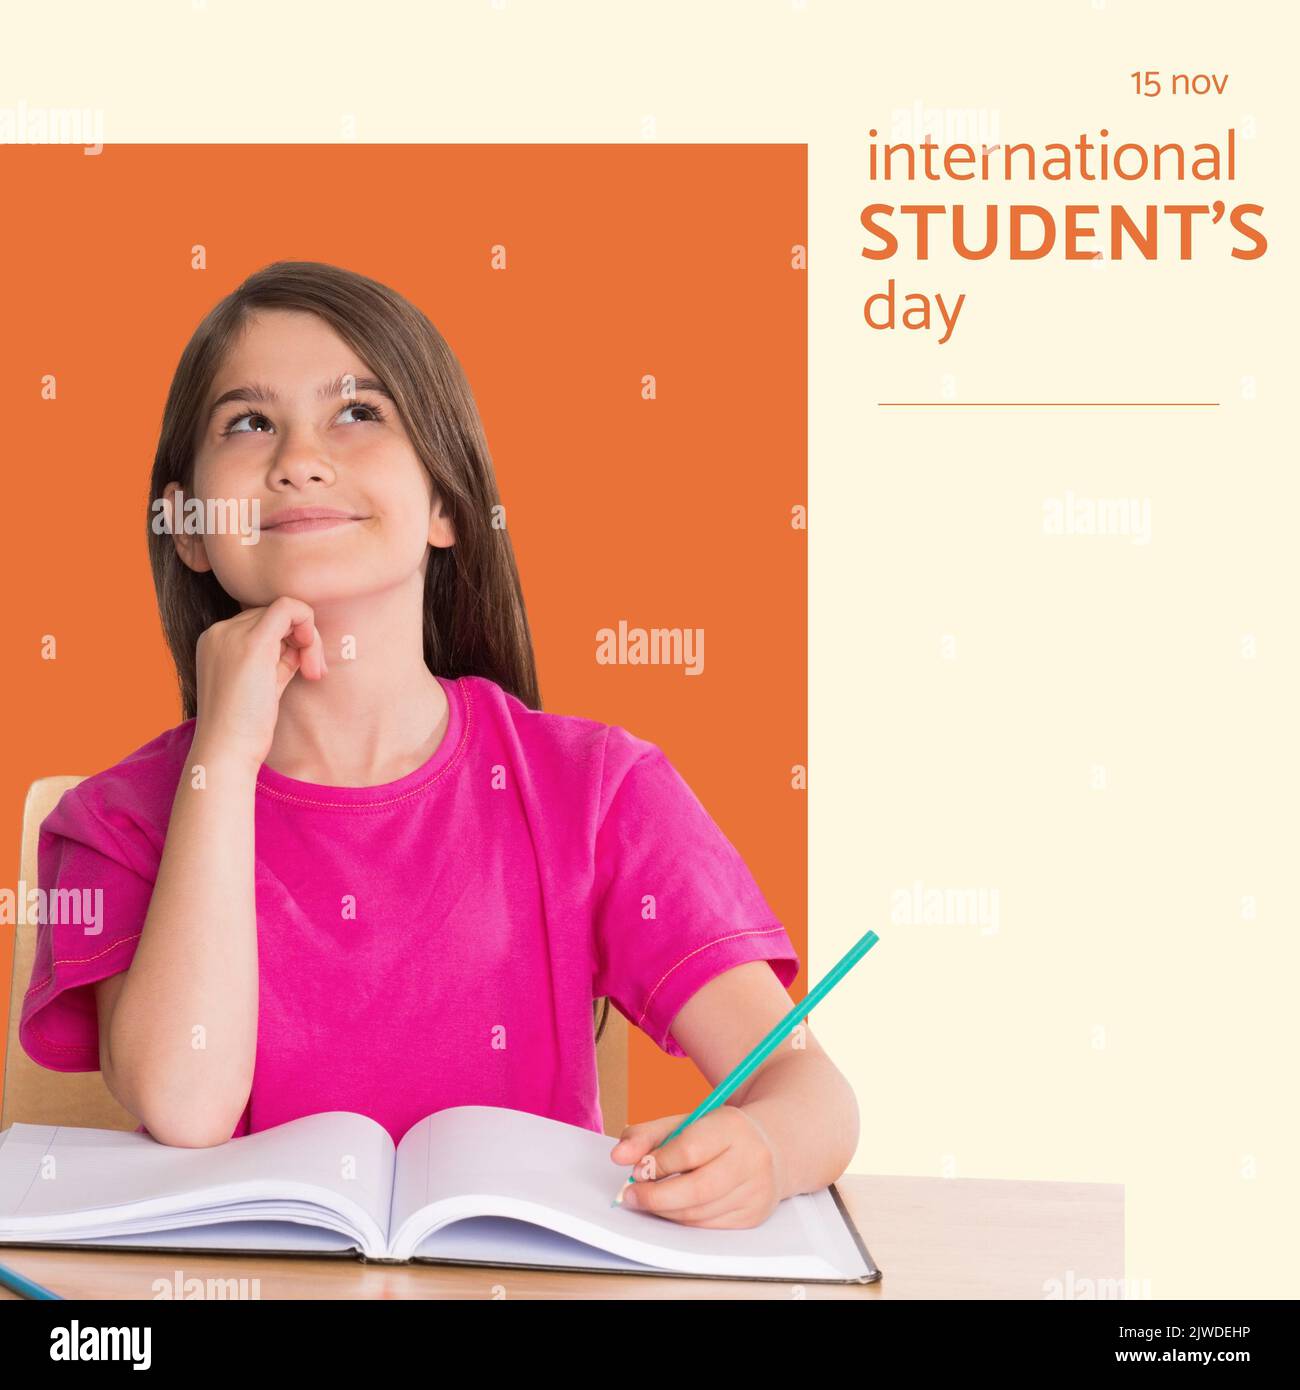 Composition du texte de la journée internationale des étudiants sur une écolière caucasienne Banque D'Images